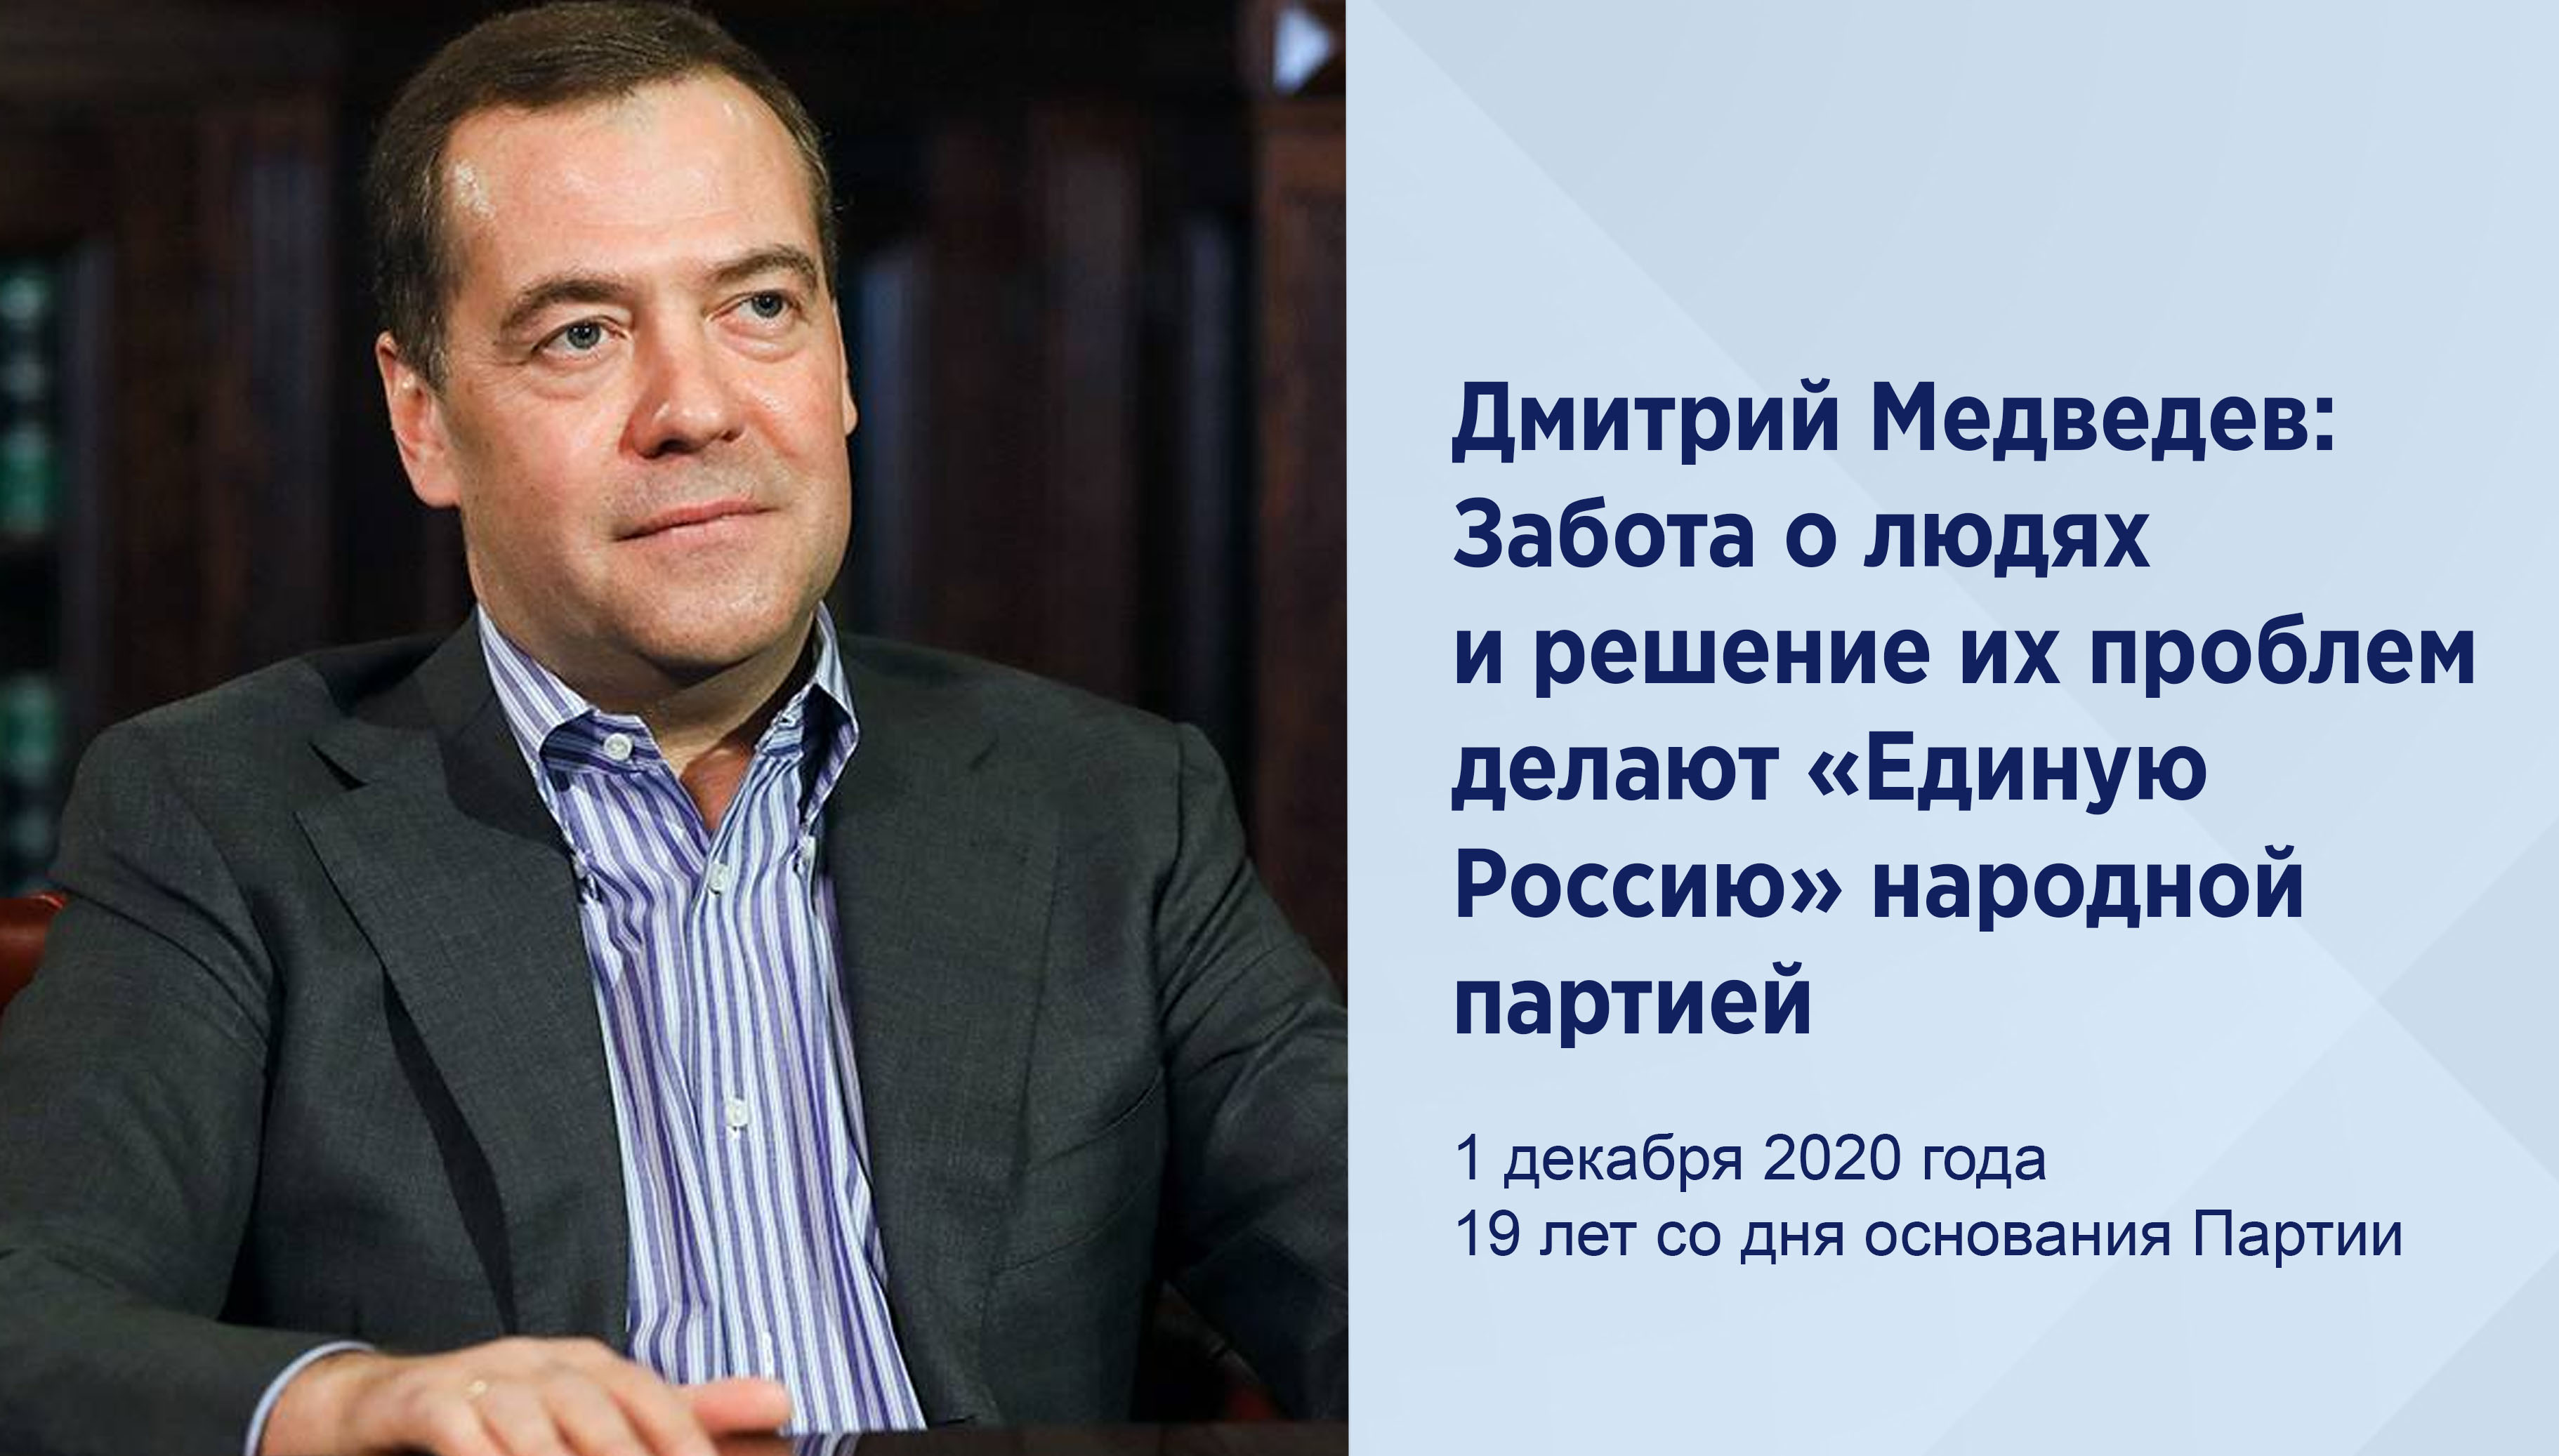 Дмитрий Медведев: Забота о людях и
решение их проблем делают «Единую
Россию» народной партией